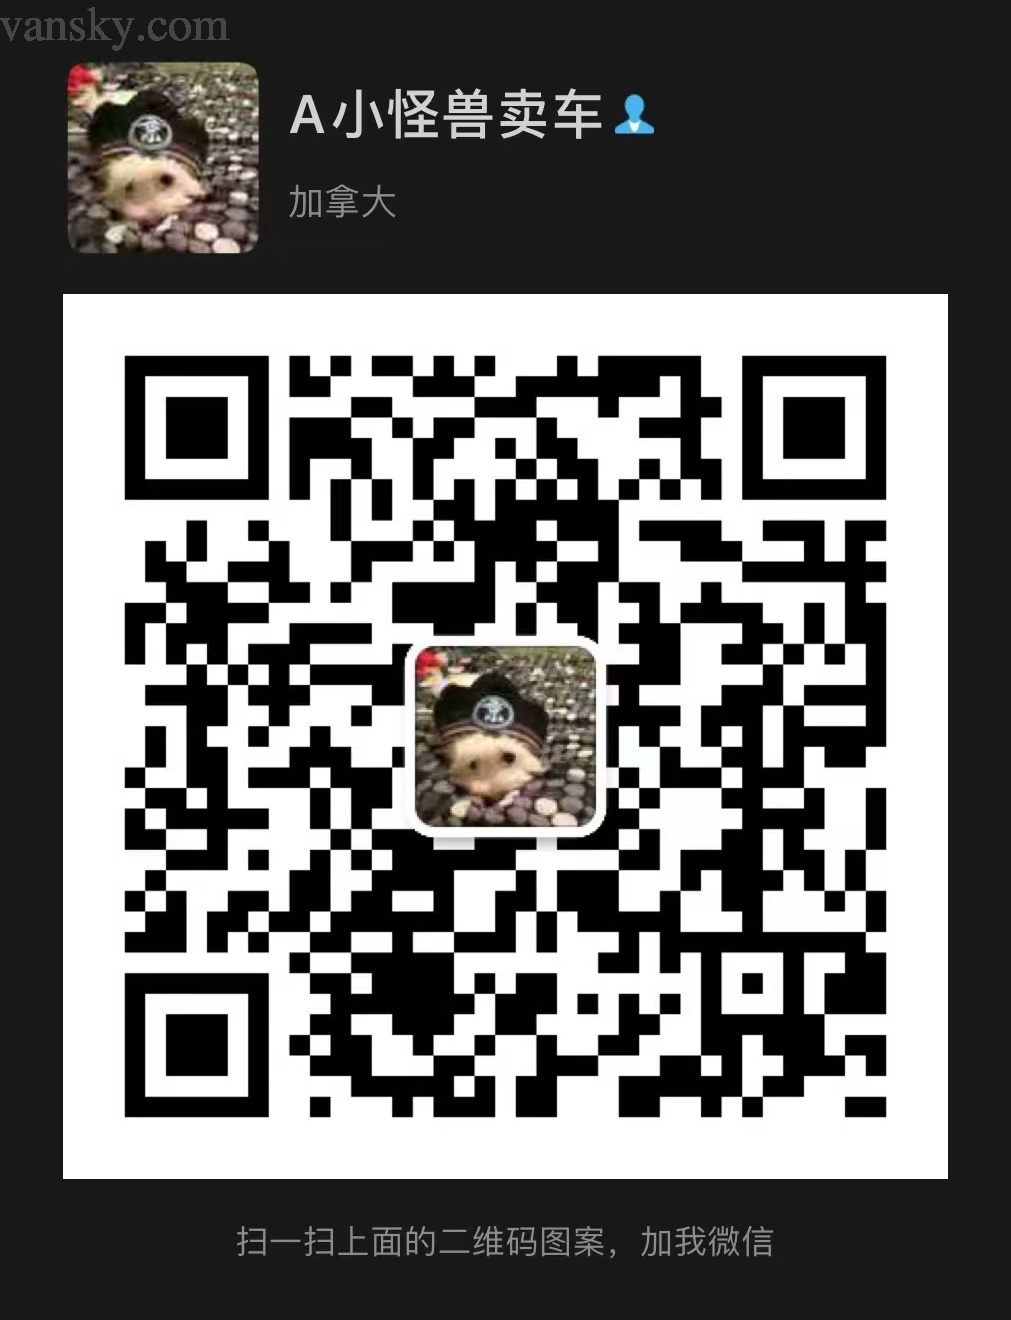 220319154815_WeChat Image_20220319154727.jpg